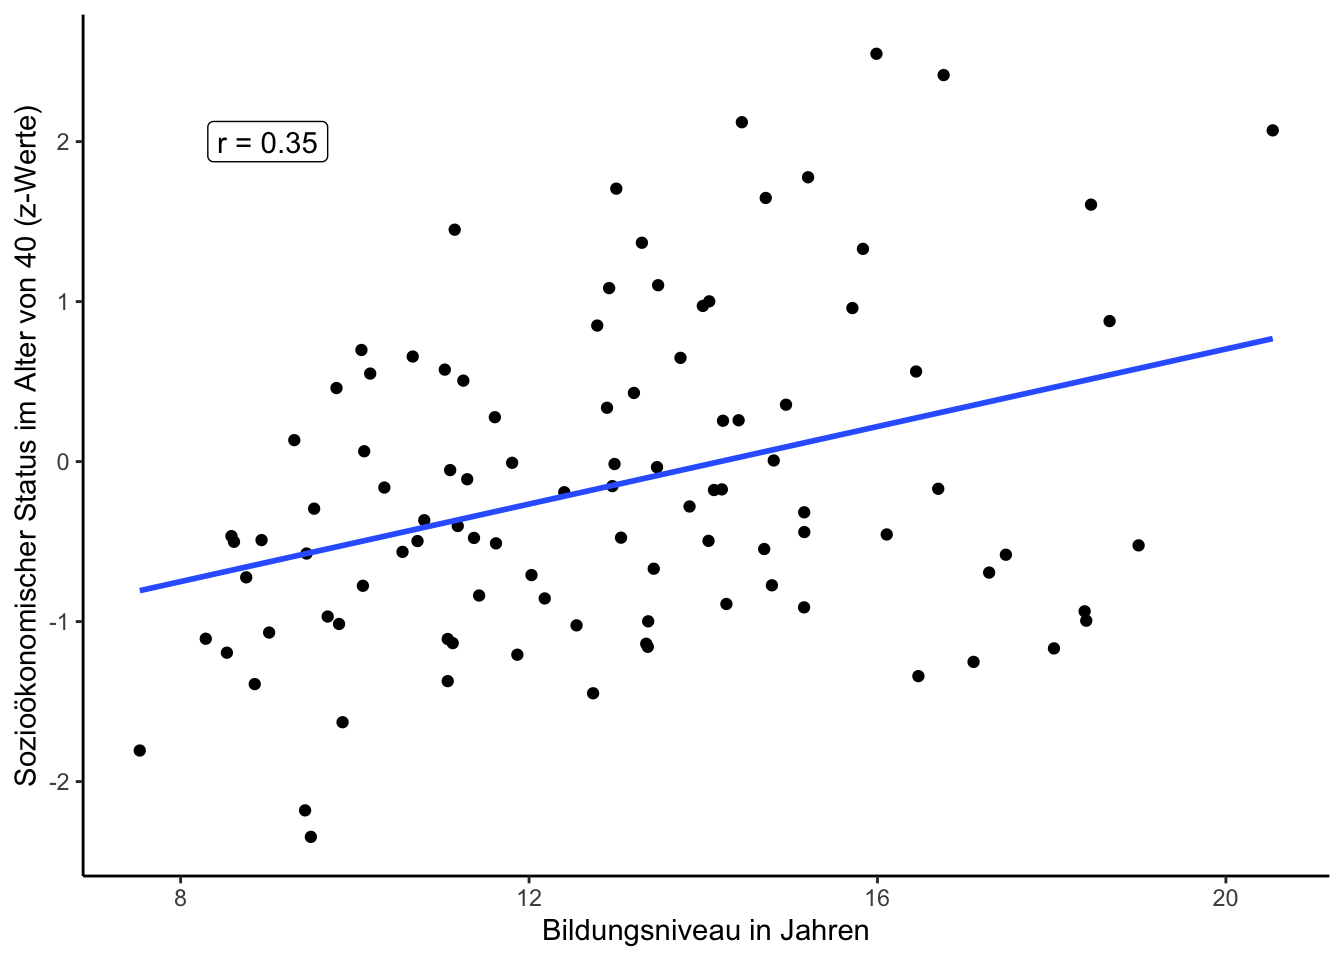 Abbildung 2: Zusammenhang von Bildungsniveau und sozioökonomischem Status. 'r' gibt die Korrelation an. Simulierte Daten.